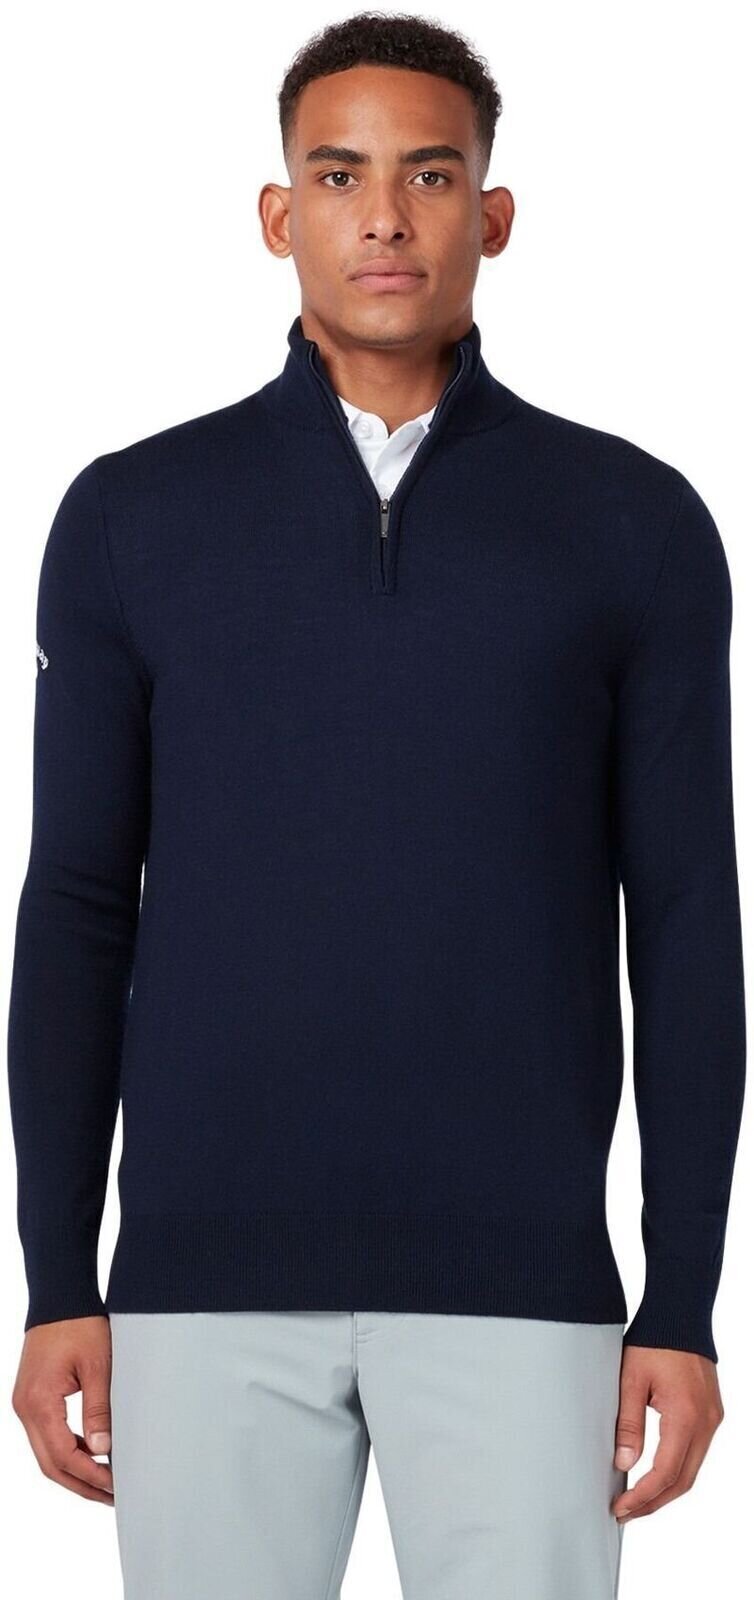 Hoodie/Sweater Callaway 1/4 Zipped Mens Merino Sweater Dark Navy S